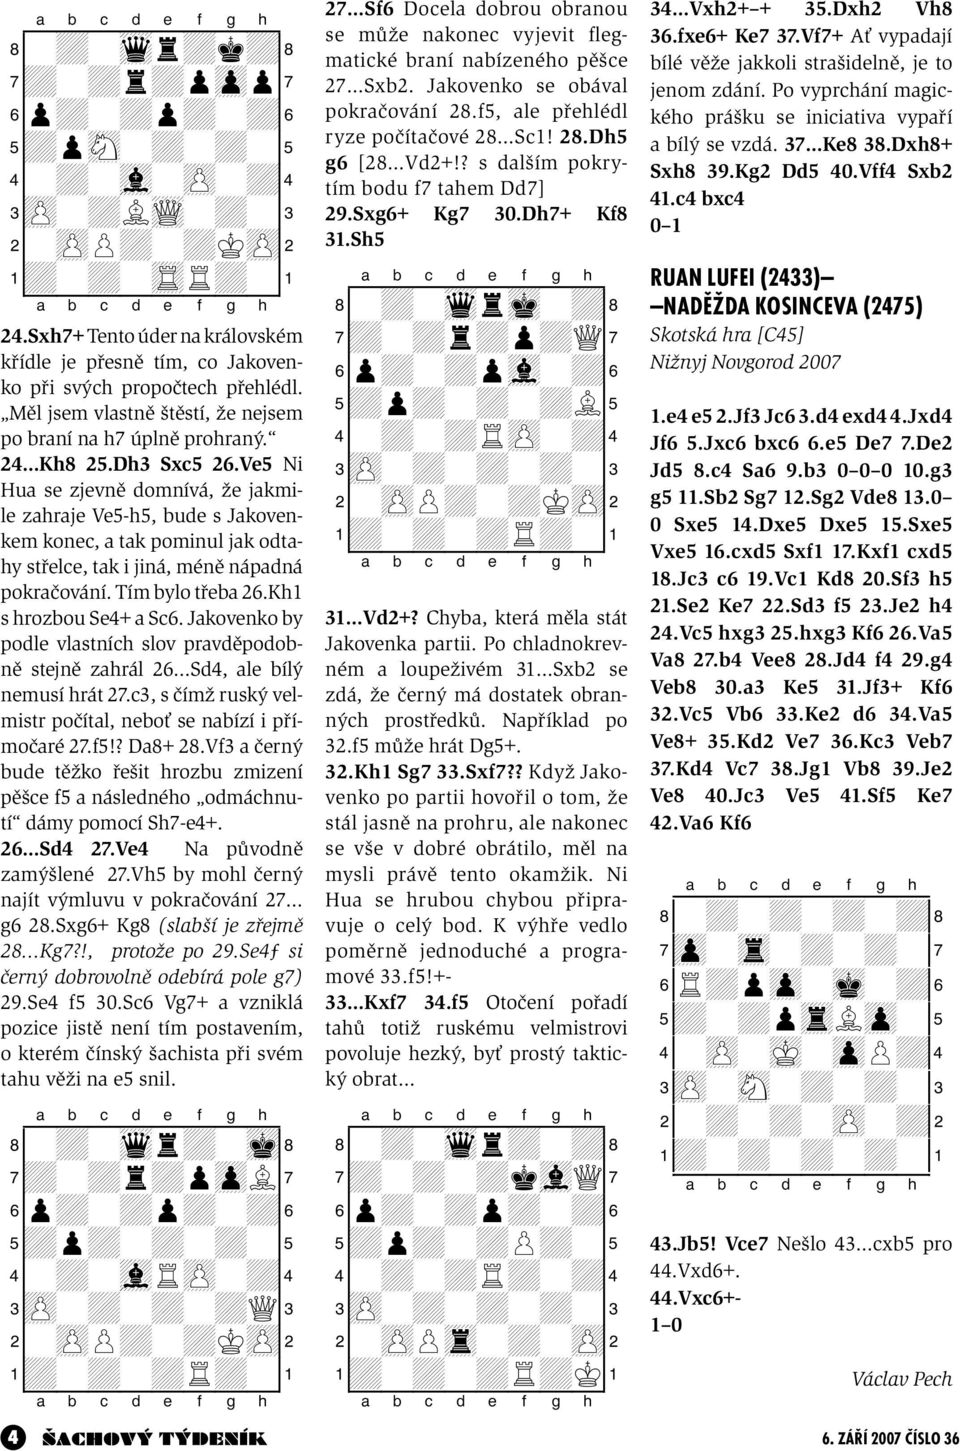 Ve5 Ni Hua se zjevně domnívá, že jakmile zahraje Ve5-h5, bude s Jakovenkem konec, a tak pominul jak odtahy střelce, tak i jiná, méně nápadná pokračování. Tím bylo třeba 26.Kh1 s hrozbou Se4+ a Sc6.